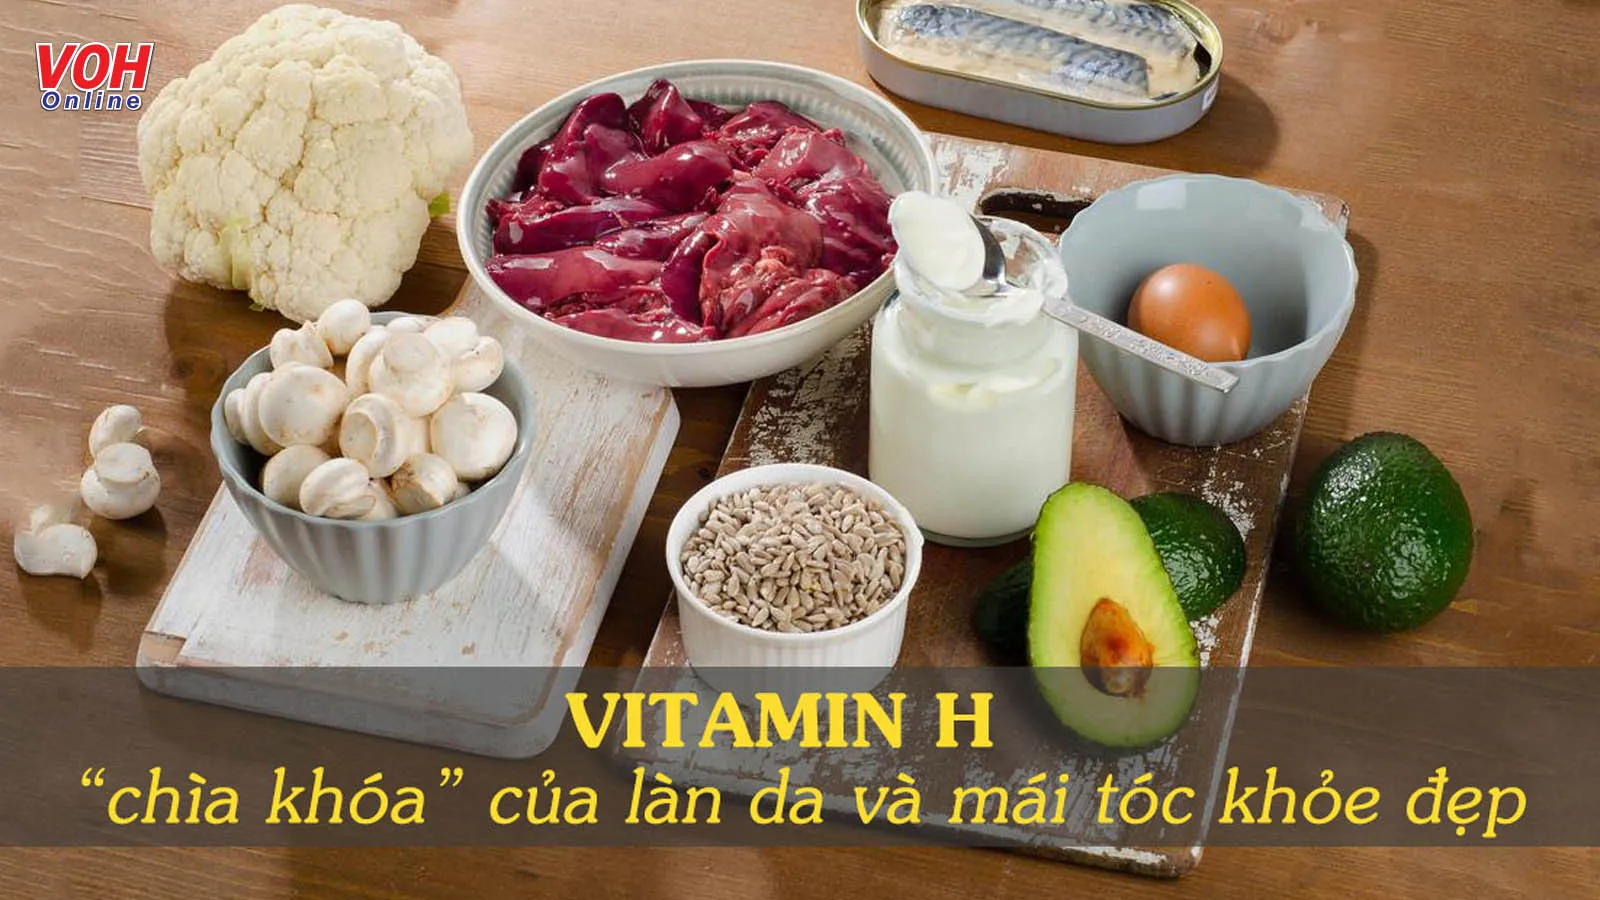 Vitamin H có tác dụng gì đối với sức khỏe và sắc đẹp?